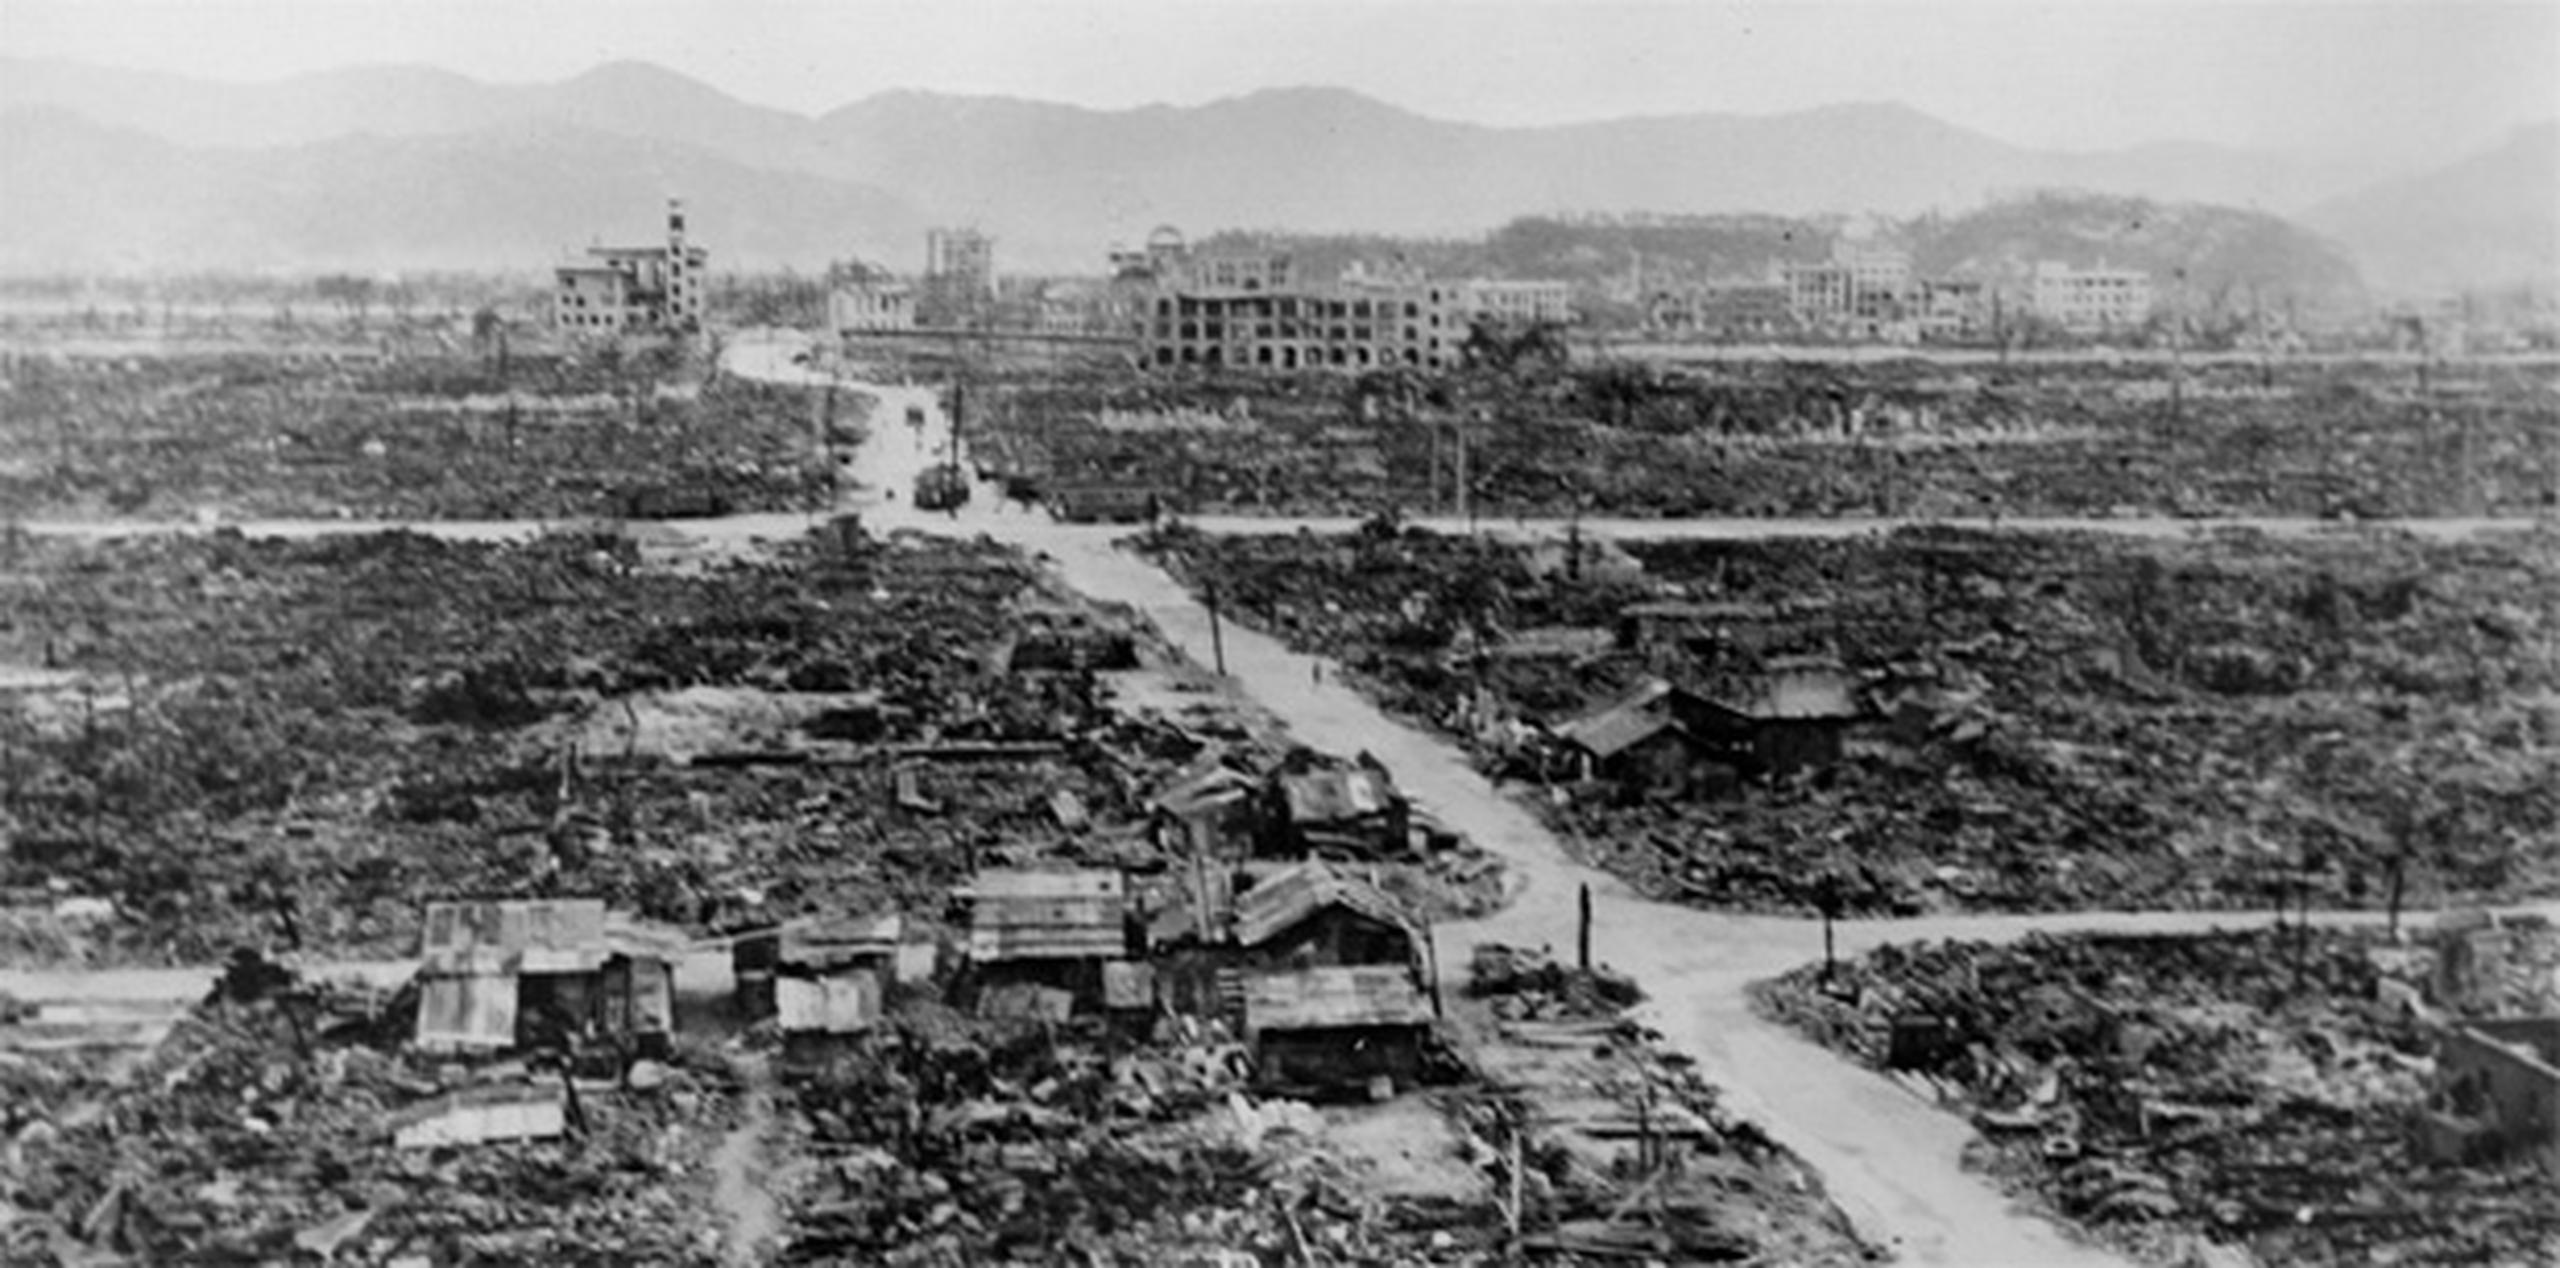 Más de 74,000 personas perecieron en el acto y otras 63,000 murieron posteriormente por la radiación y las heridas causadas por la explosión de la bomba atómica.